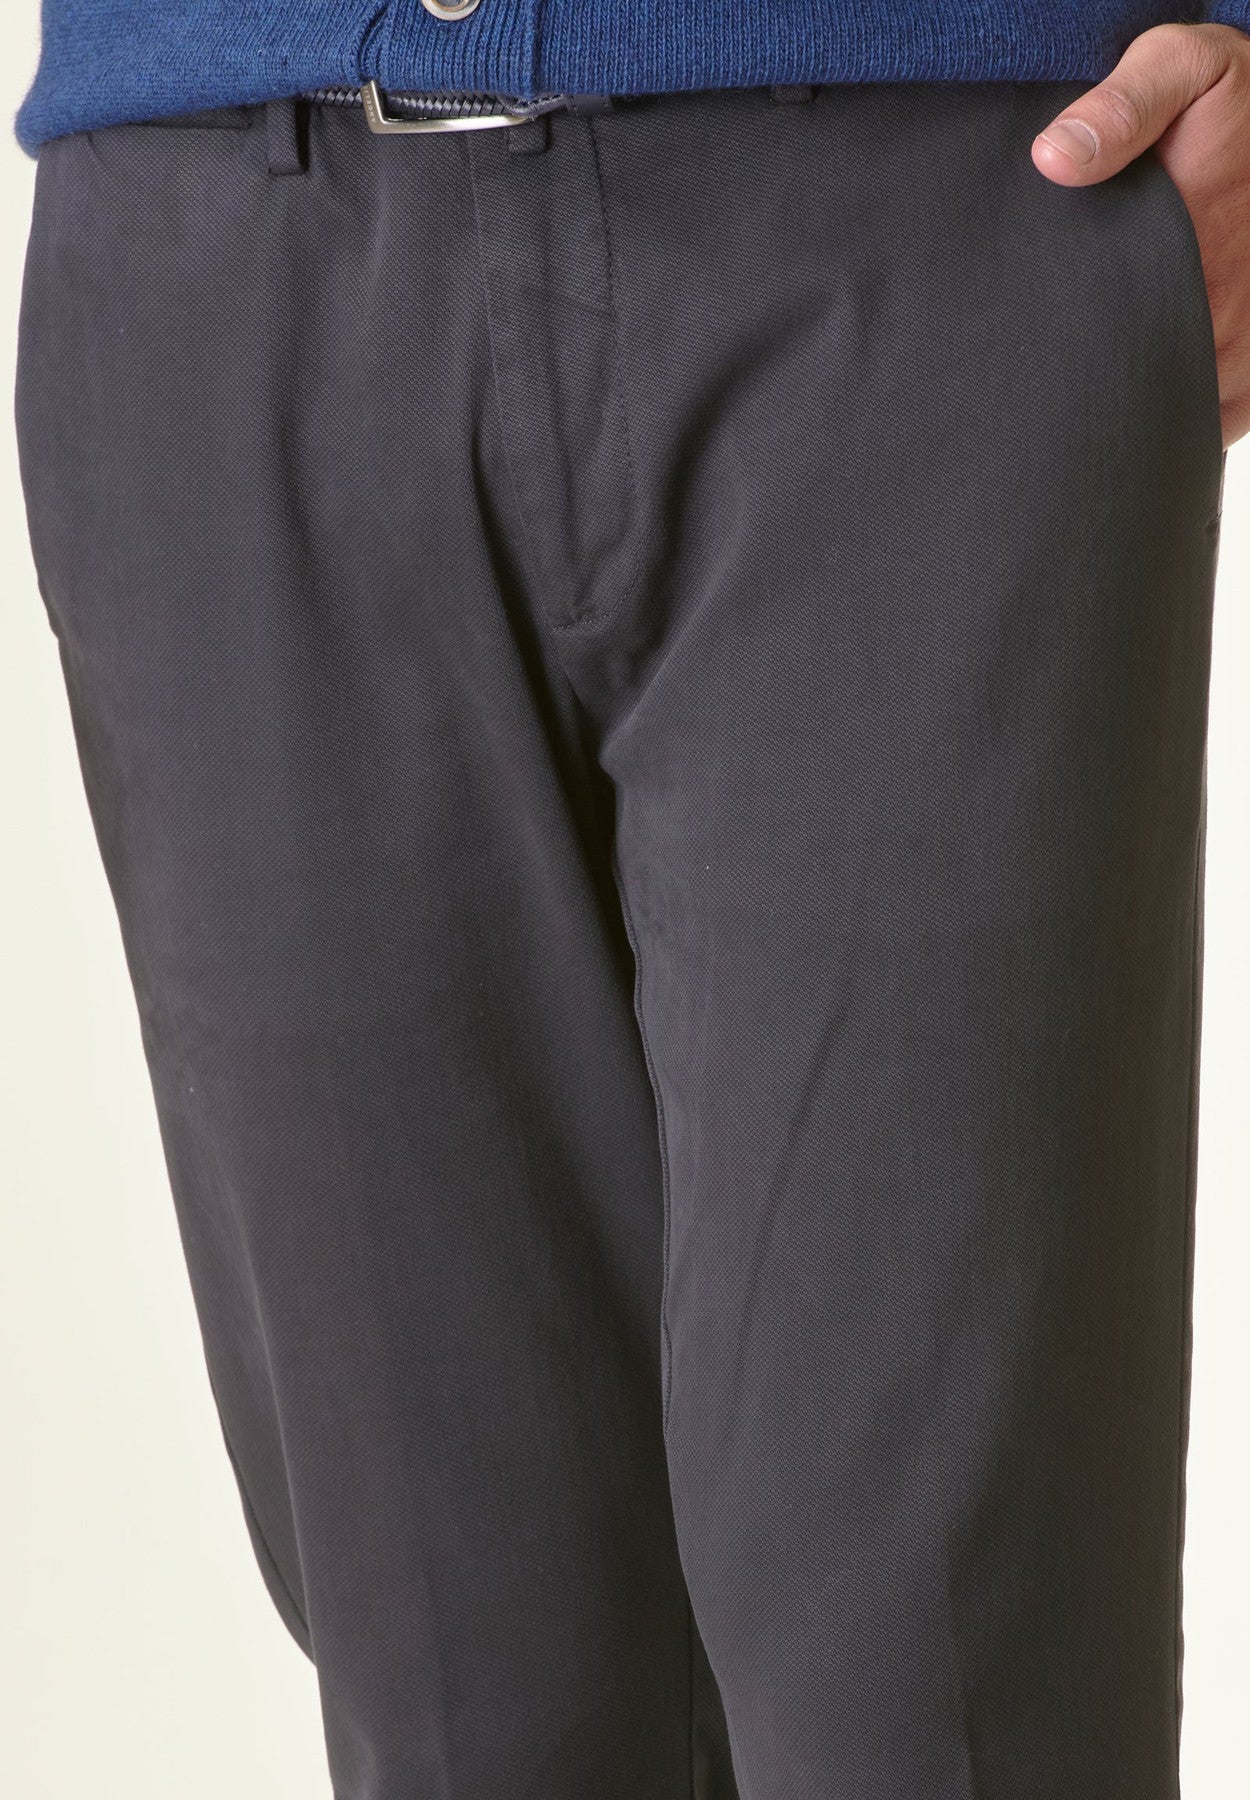 Pantalone blu navy armatura cotone slim